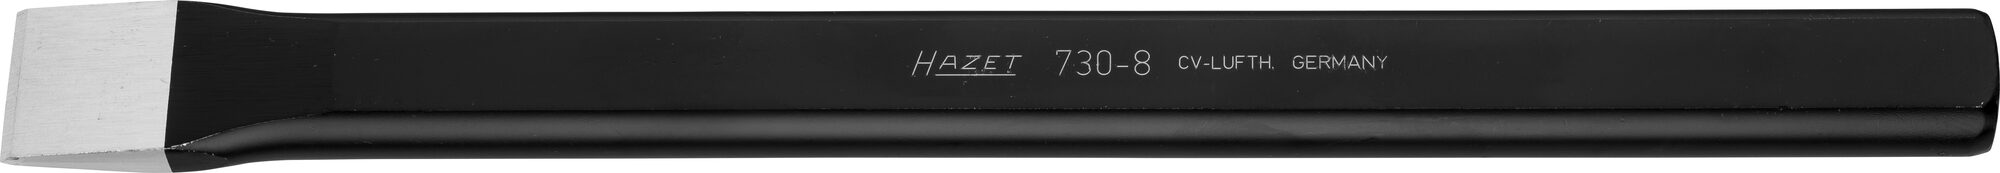 HAZET Flachmeißel 730-8 · 26 mm